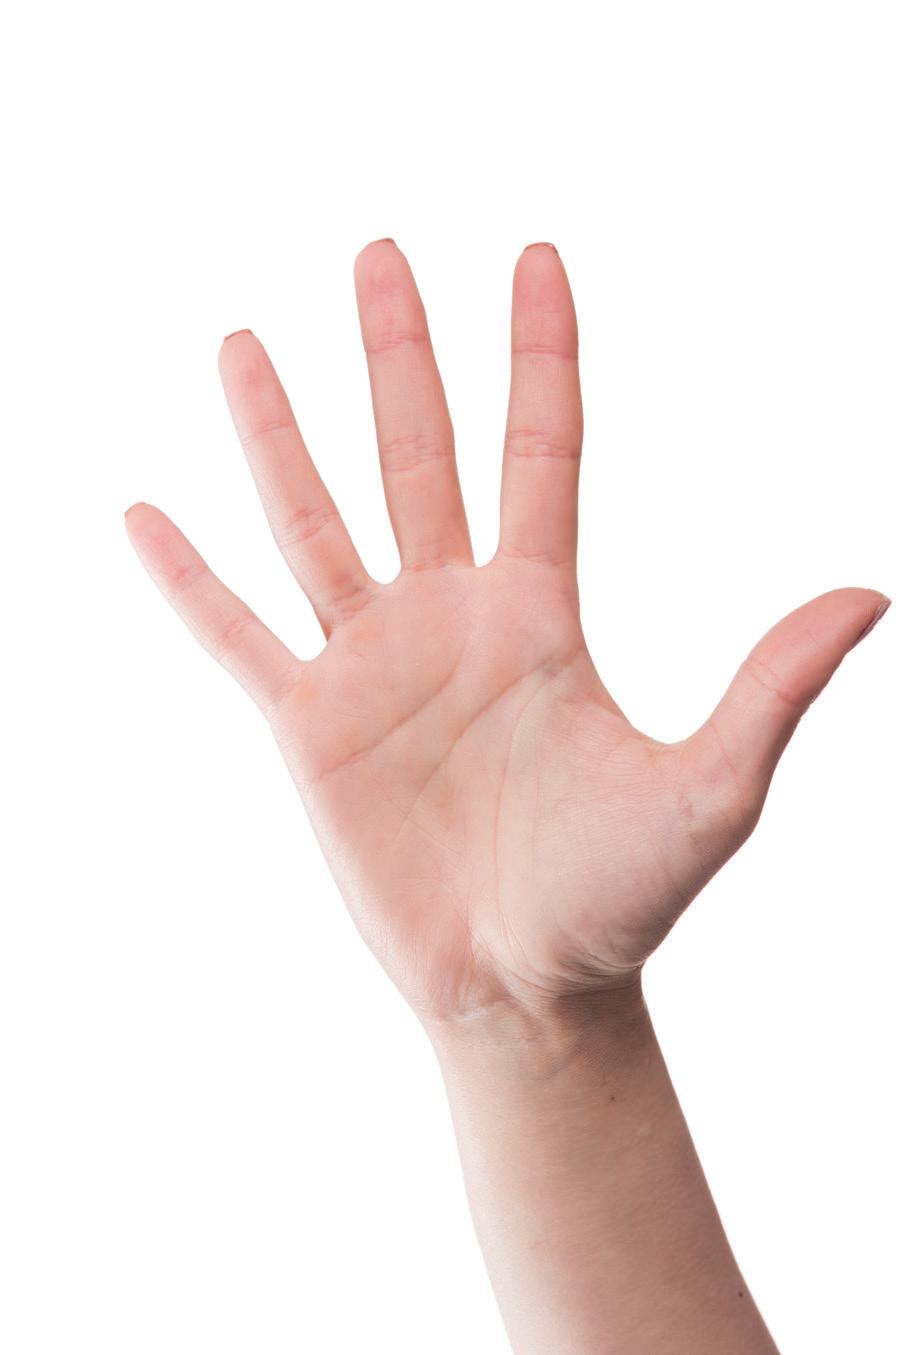 UW HANDEN ZIJN ONVERVANGBAAR! De menselijke hand is het belangrijkste lichaamsdeel om fysiek een omgeving mee te manipuleren.